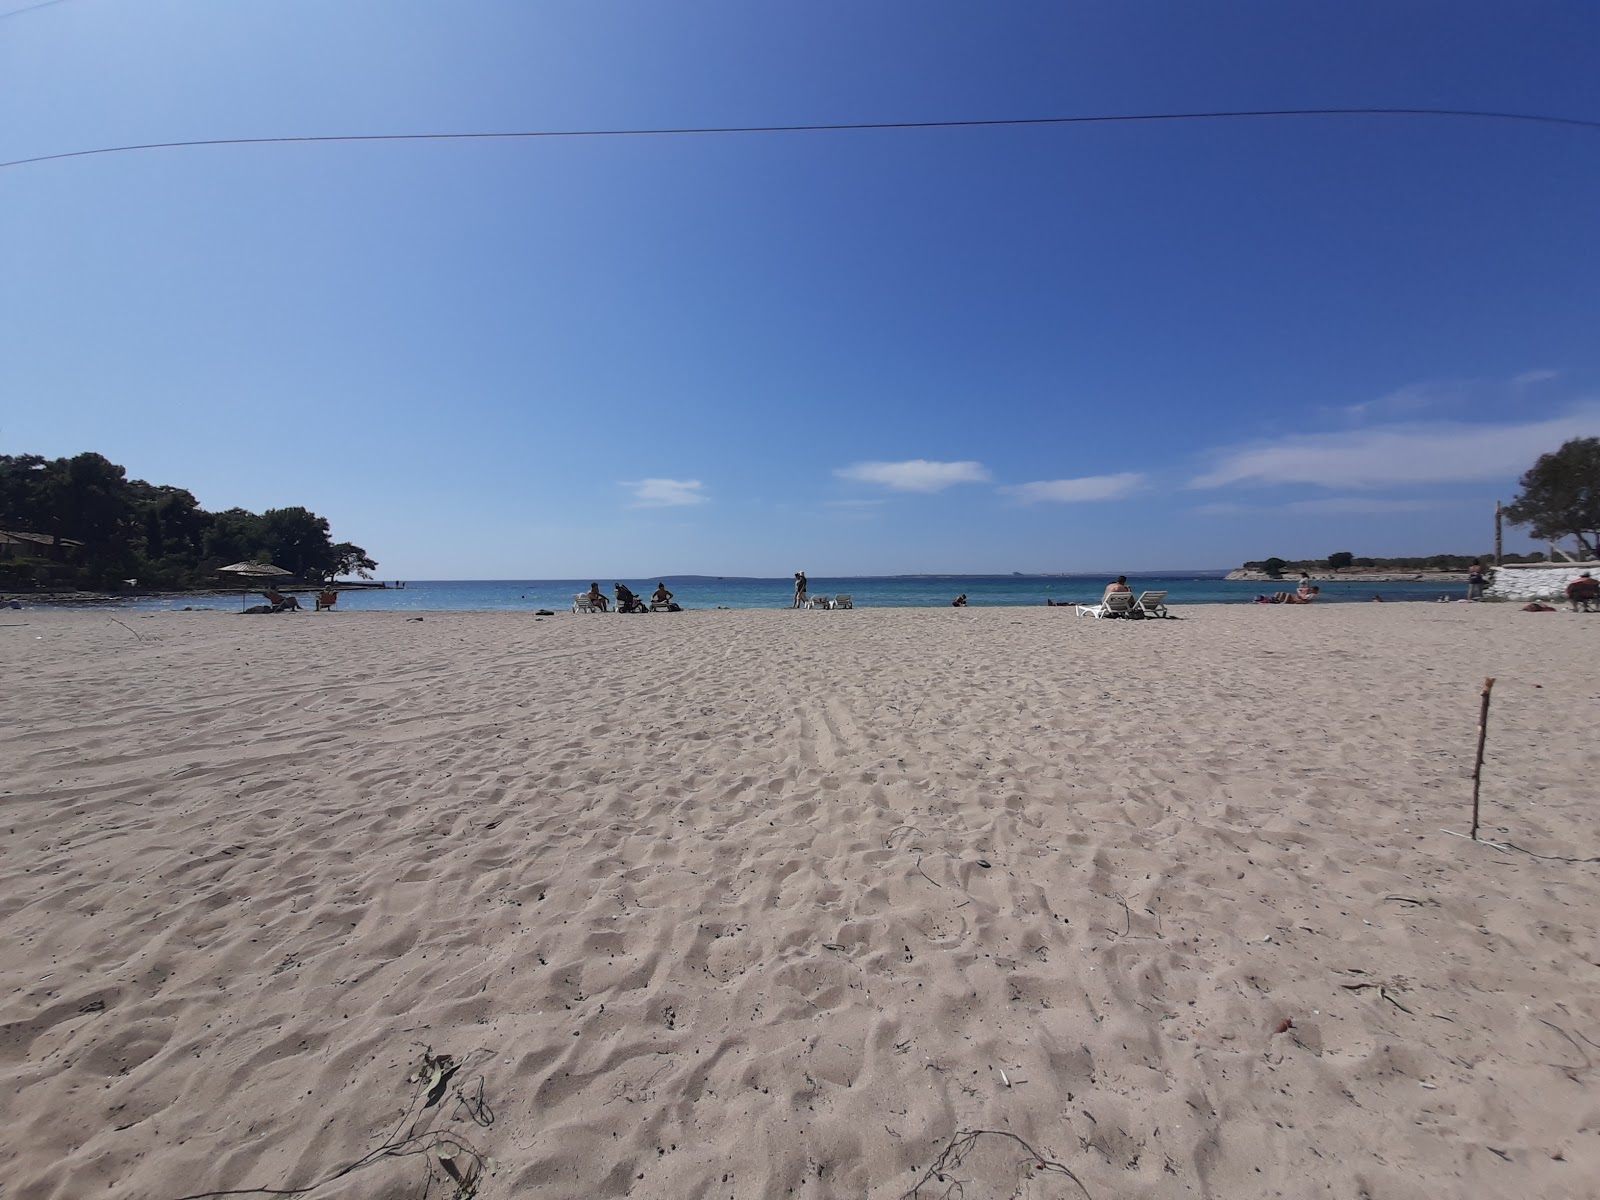 St. pauli beach'in fotoğrafı kısmen temiz temizlik seviyesi ile